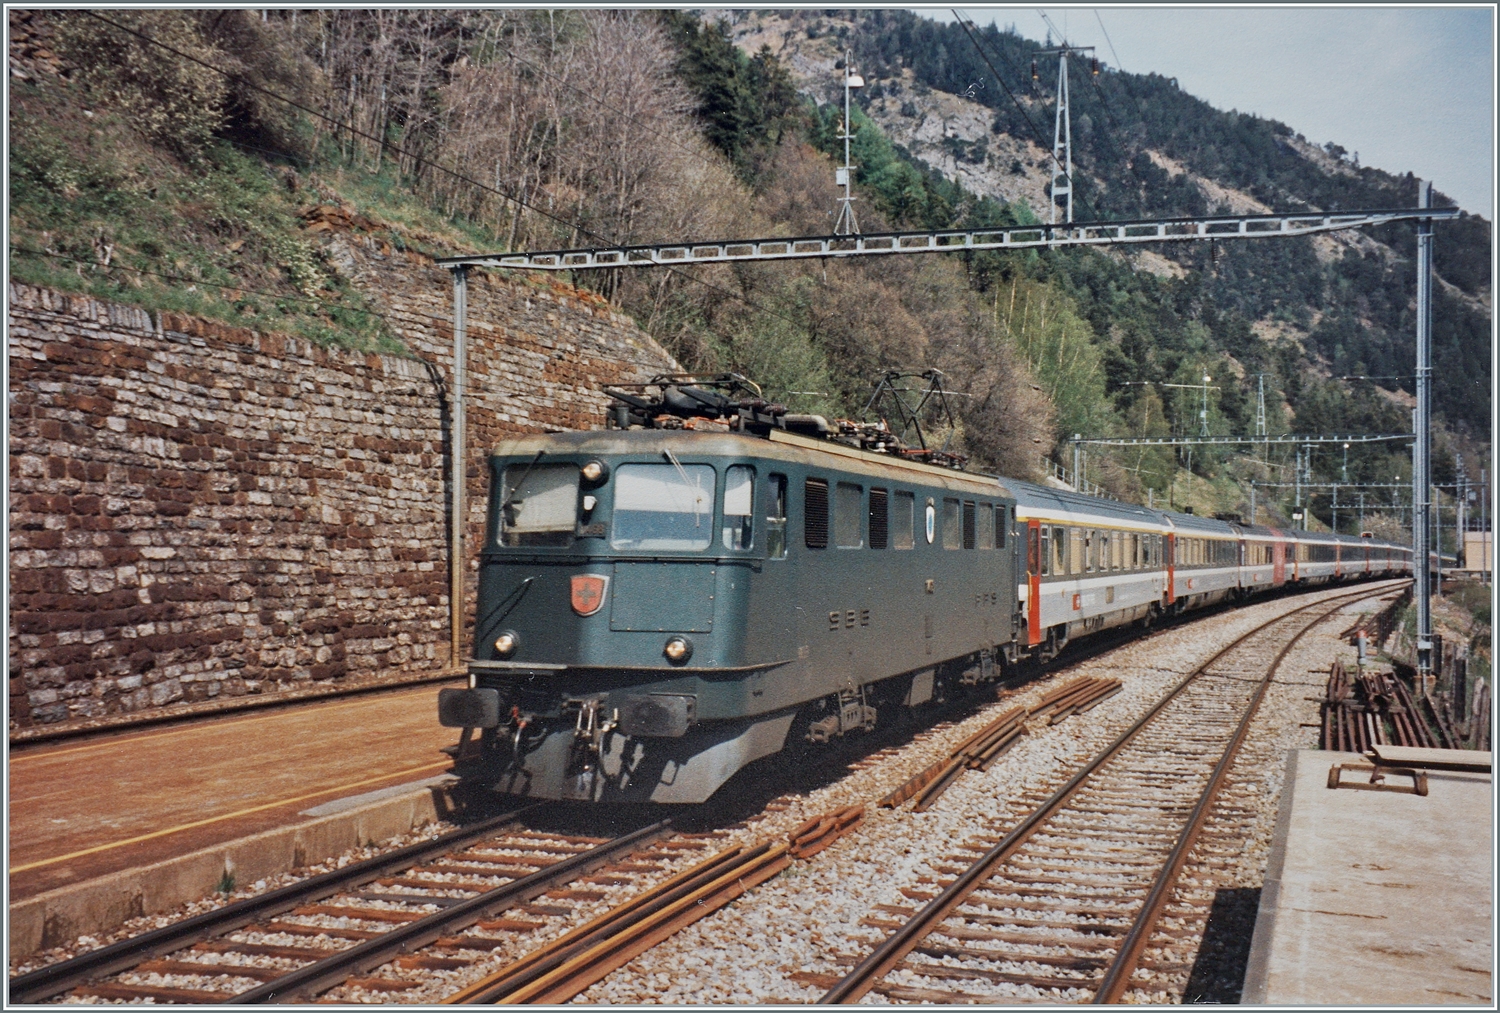 Die SBB Ae 6/6 11468  Lenzburg  ist im Frühsommer mit dem EC  Matterhorn  von Brig nach Wiesbaden auf der BLS Südrampe bei Hohtenn unterwegs.

Analogbild vom Mai 1995